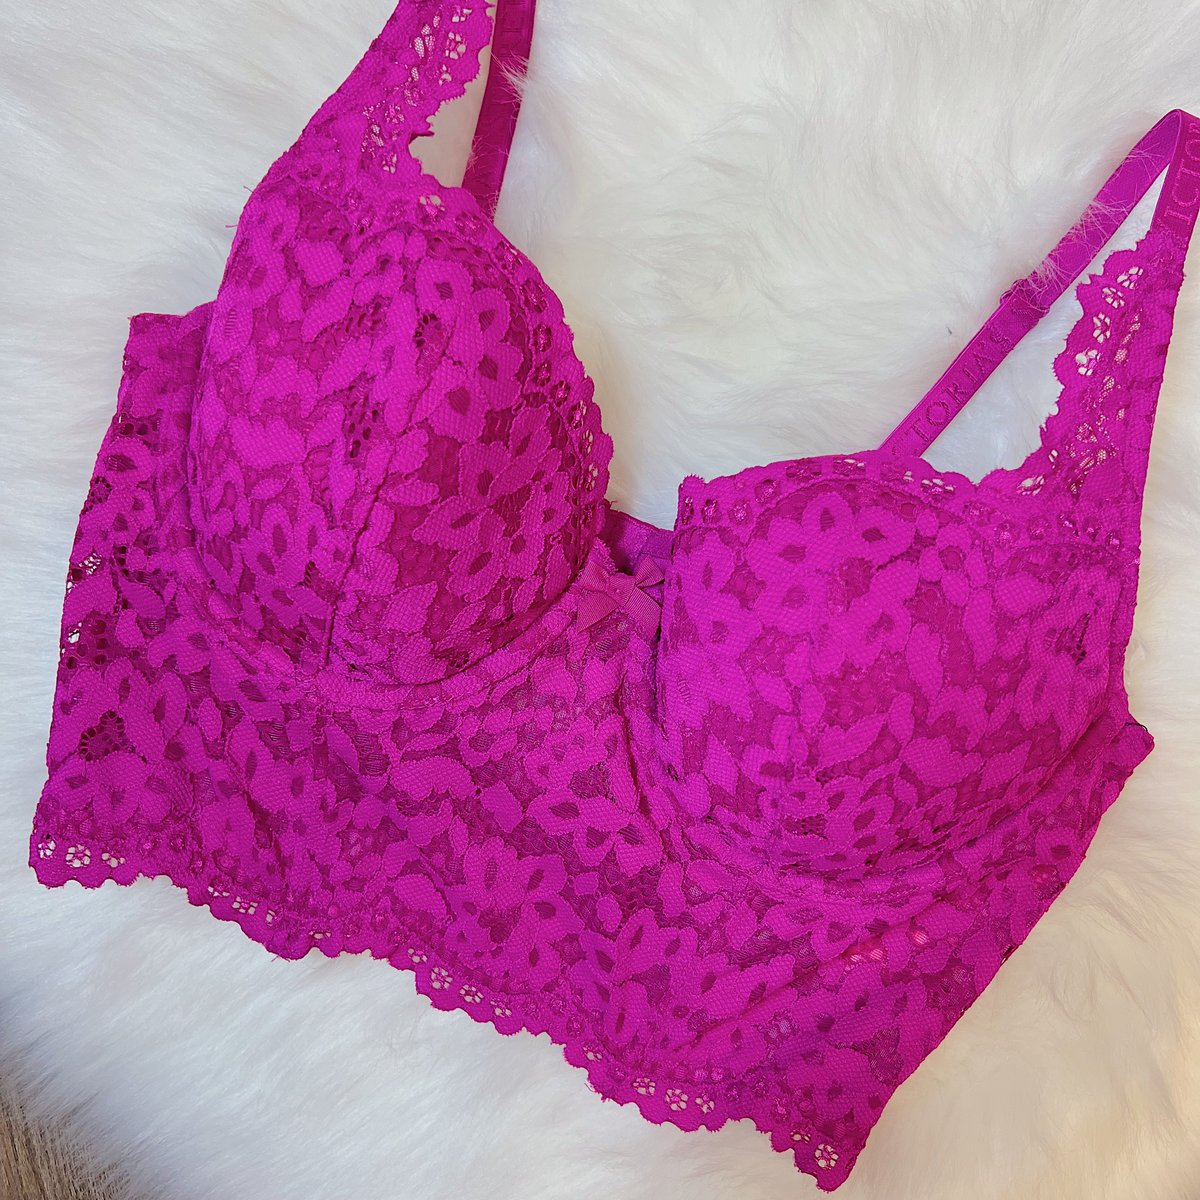 Size 36C/34D - Victoria's Secret Fuchsia Lace Bustier NWOT